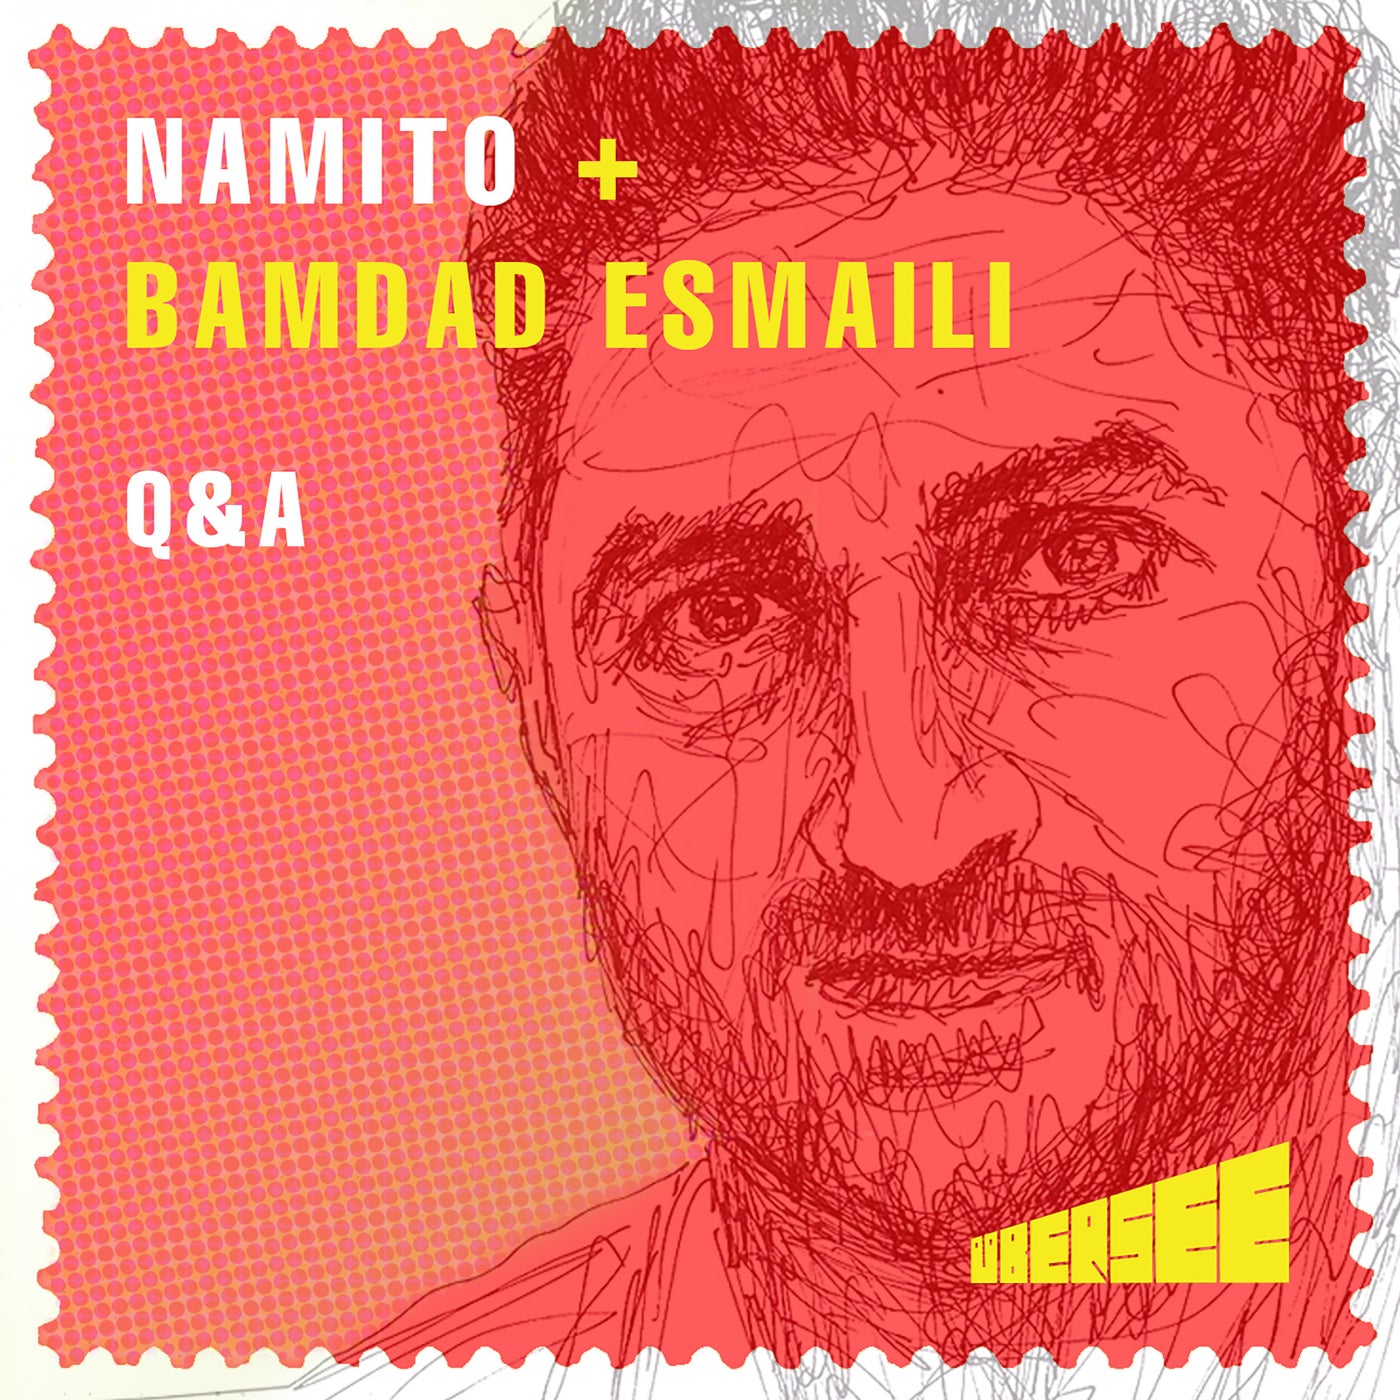 Namito, Bamdad Esmaili – q&a [UBERSEE007]